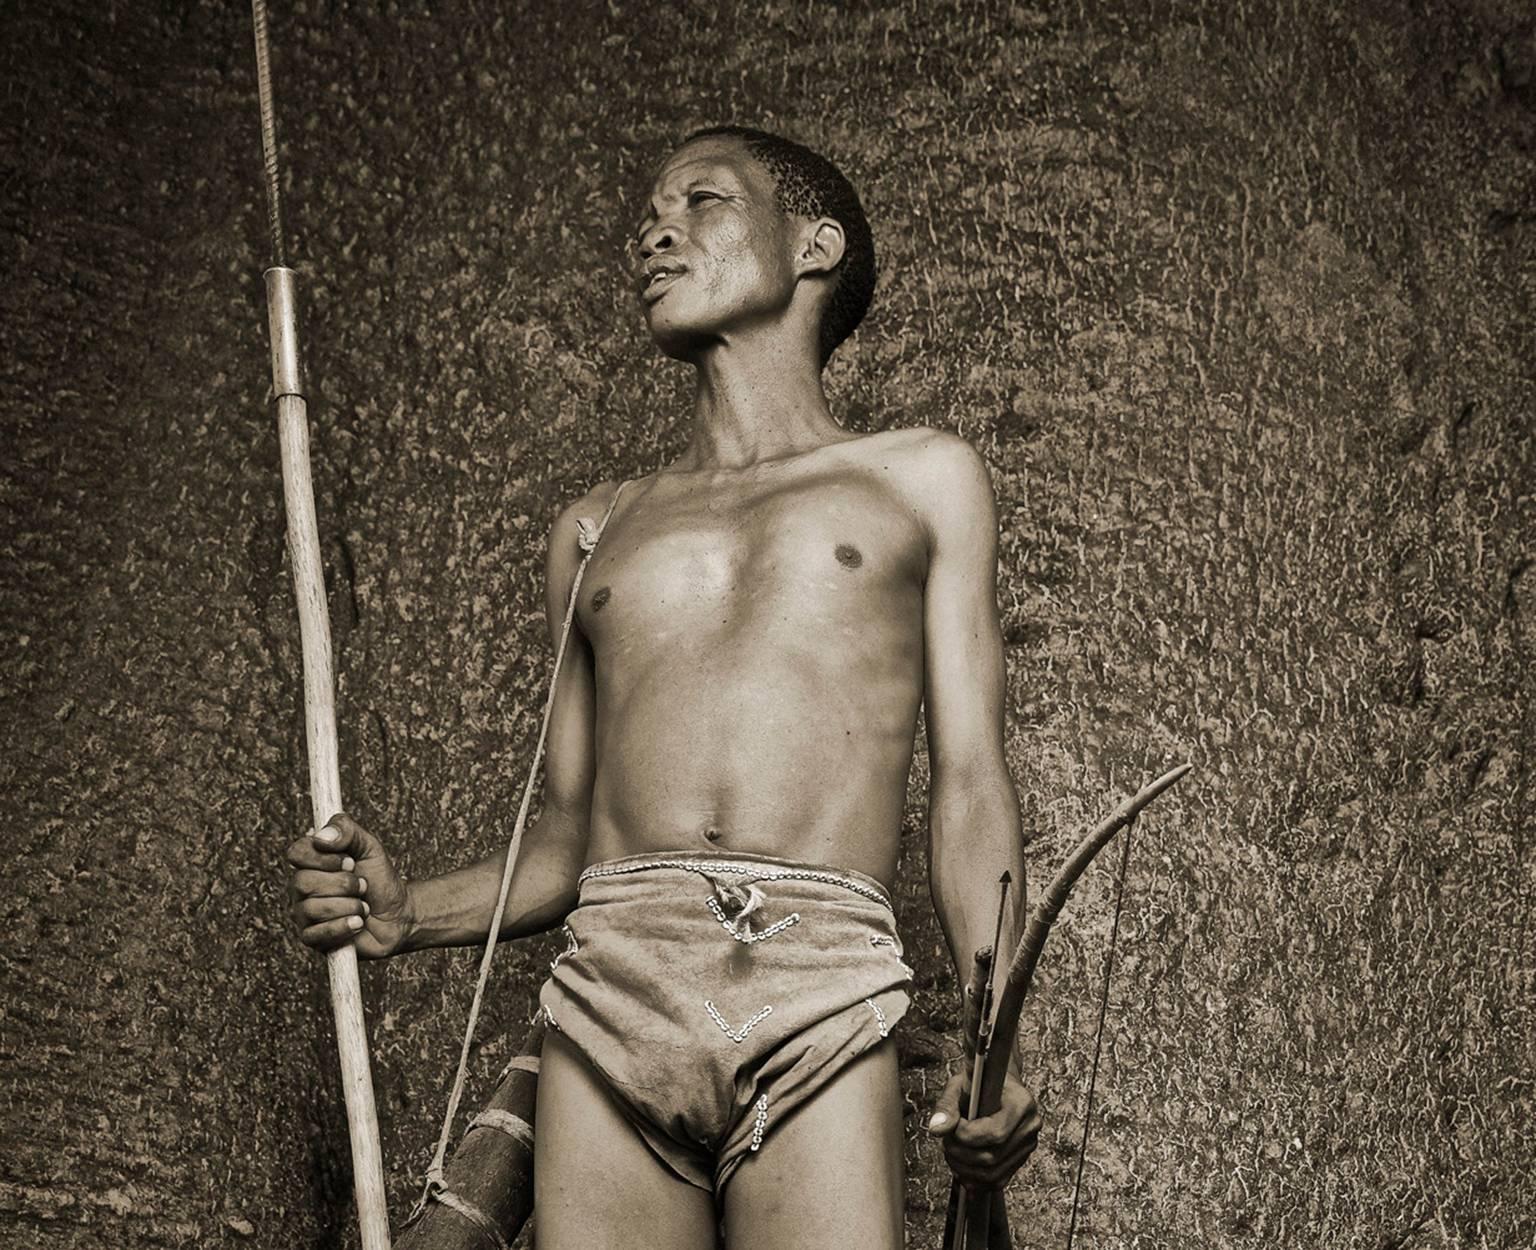 San Bushman 3 - Photograph by Chris Gordaneer